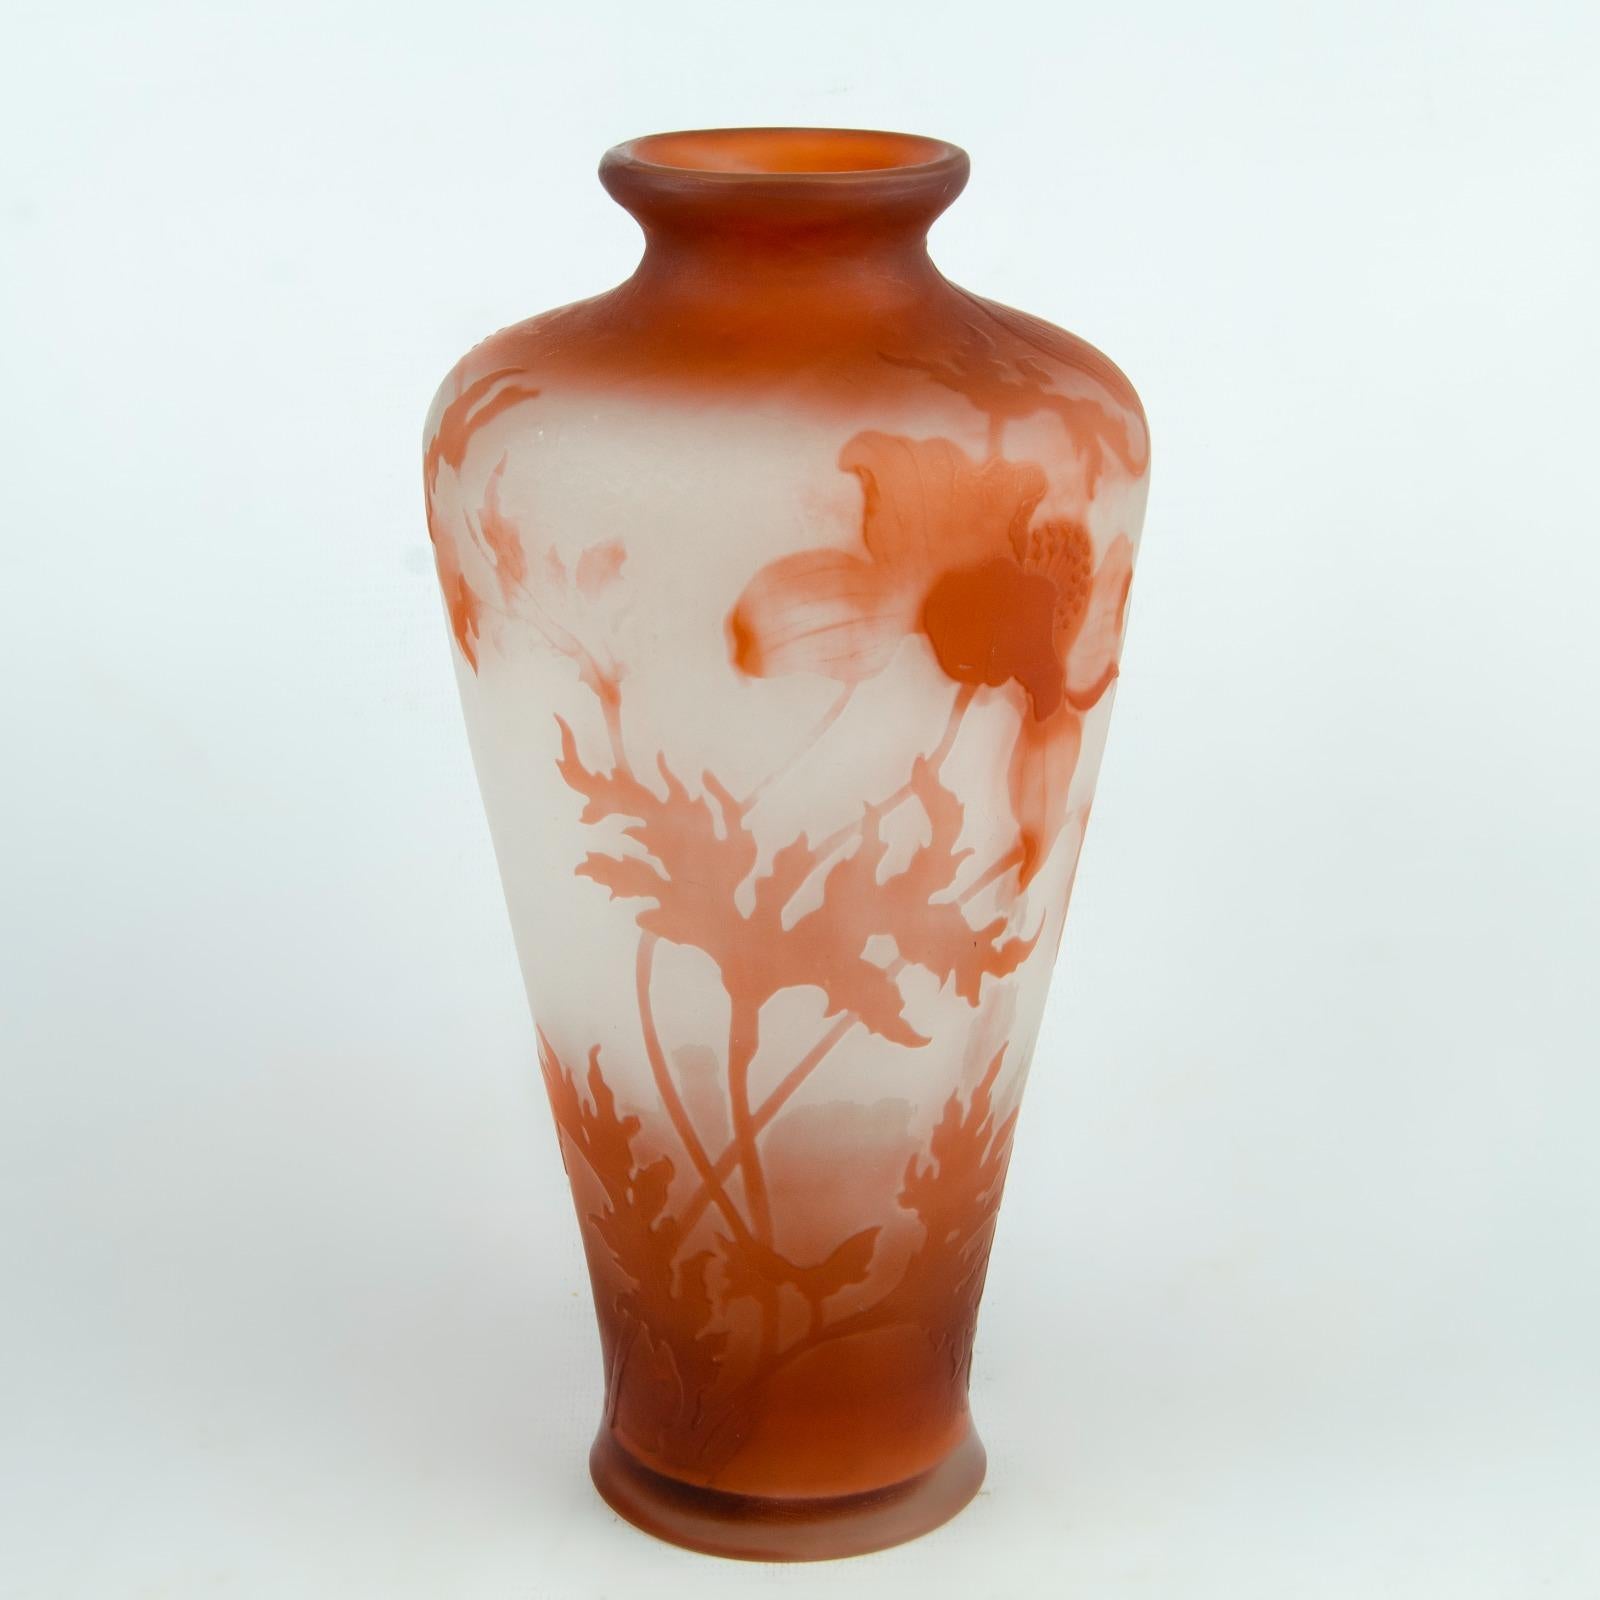 Emile Galle (1846-1904) Nnancy-Vase Balaustre
In farblosem Glas mit Einschlüssen von sandigem Glaspulver
Cammeowork mit Blumendekor
Cammeo Unterschrift
